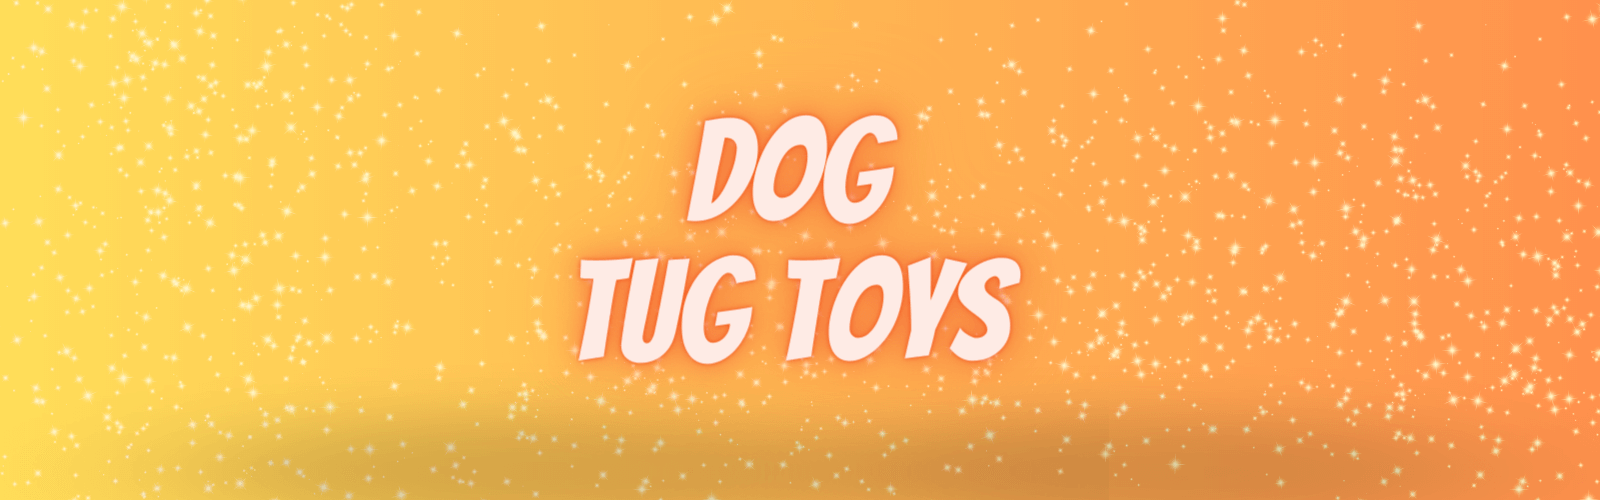 QUMY Dog Chew Toys Bone Tug-of-war Games